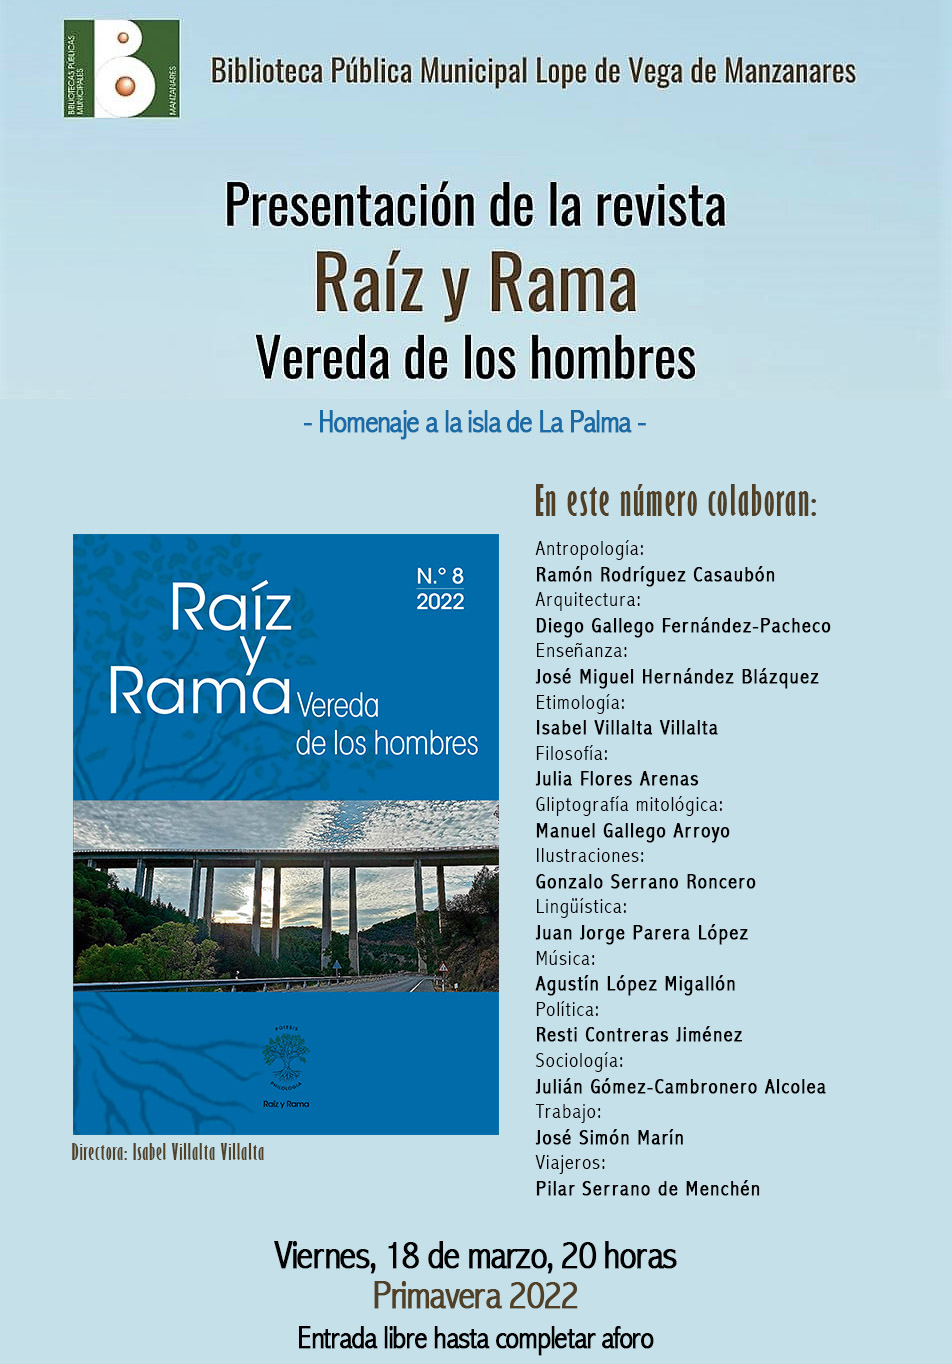 Cartel de la presentación en Manzanares de la revista Raíz y rama